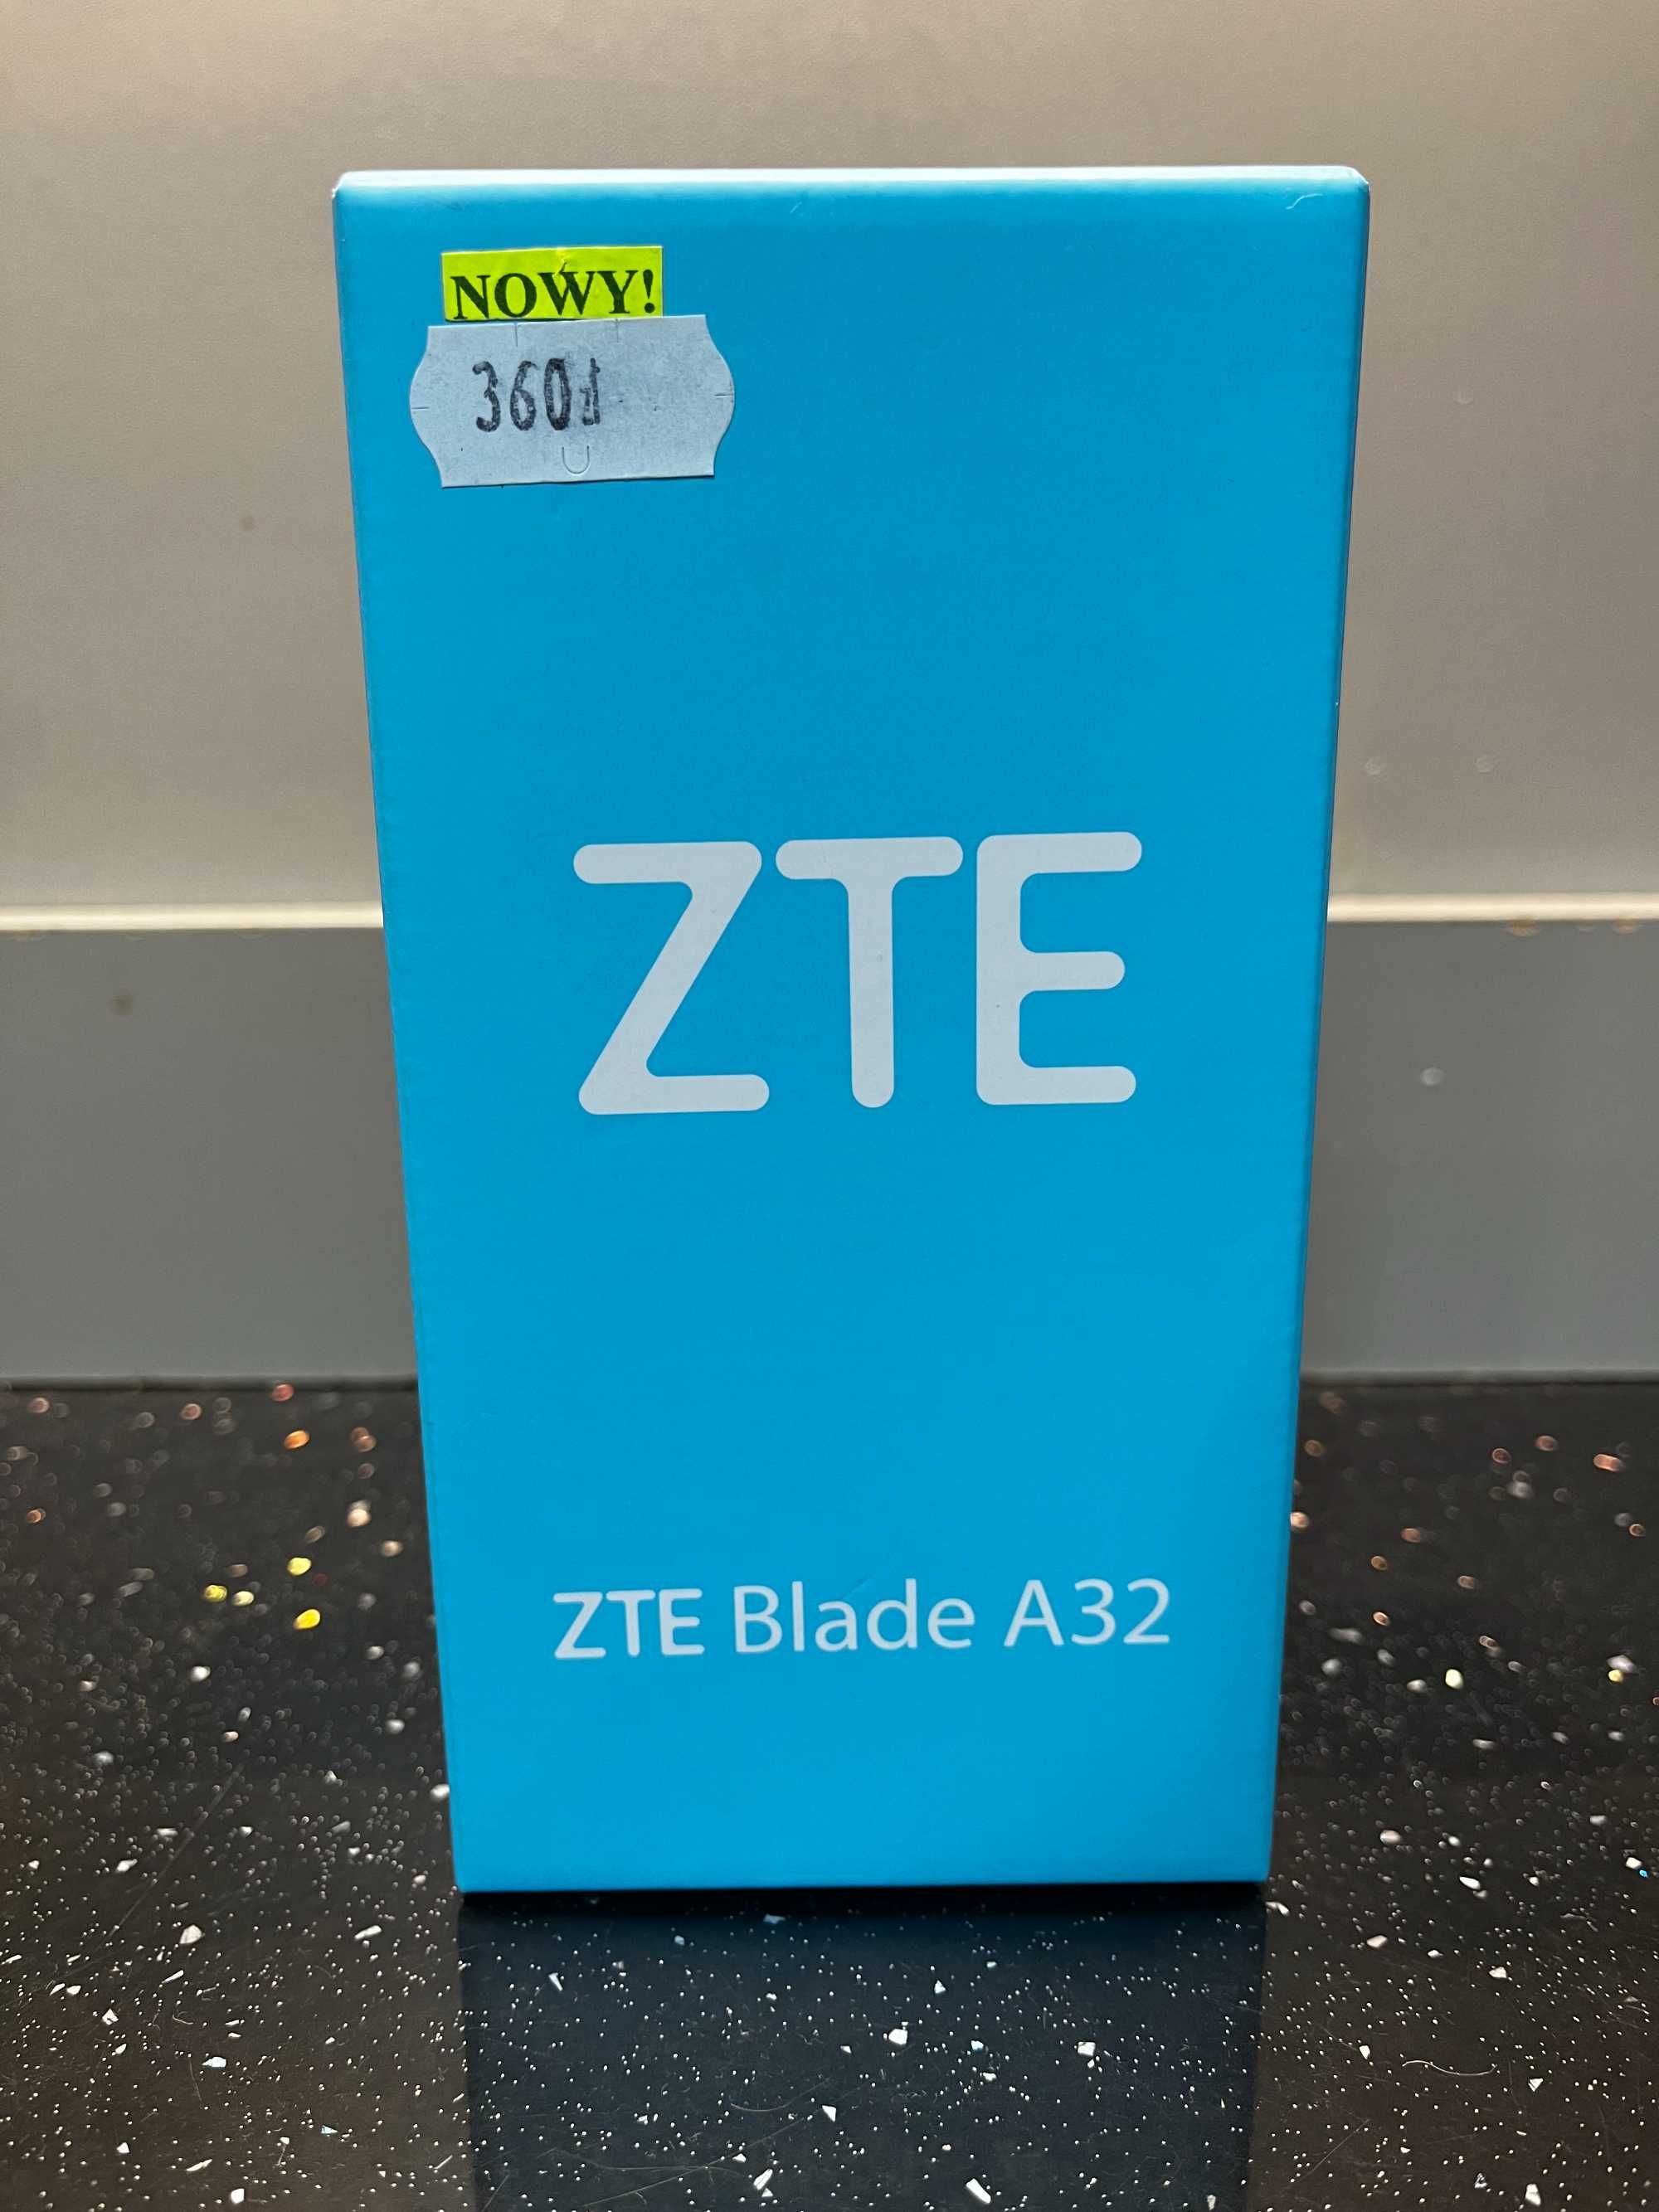 ZTE Blade A23 NOWY! 32Gb, Black, Gwarancja sklep